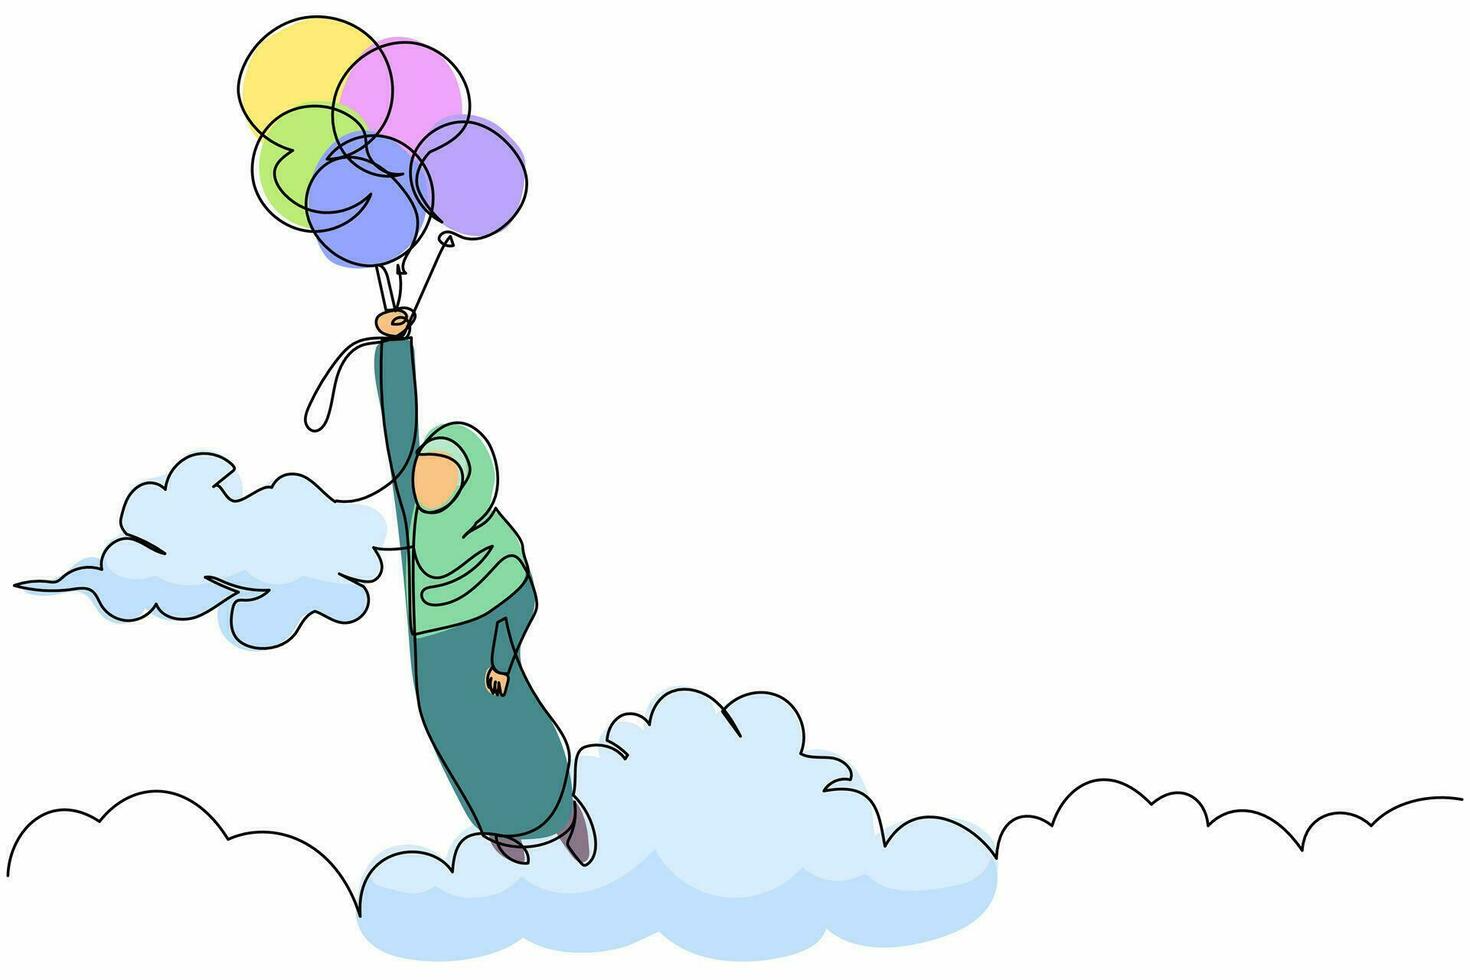 une seule ligne continue dessinant une femme d'affaires arabe flottant avec un ballon volant à travers les nuages. l'employé de bureau atteint l'objectif, atteint l'objectif, la solution. une ligne dessiner illustration vectorielle de conception graphique vecteur